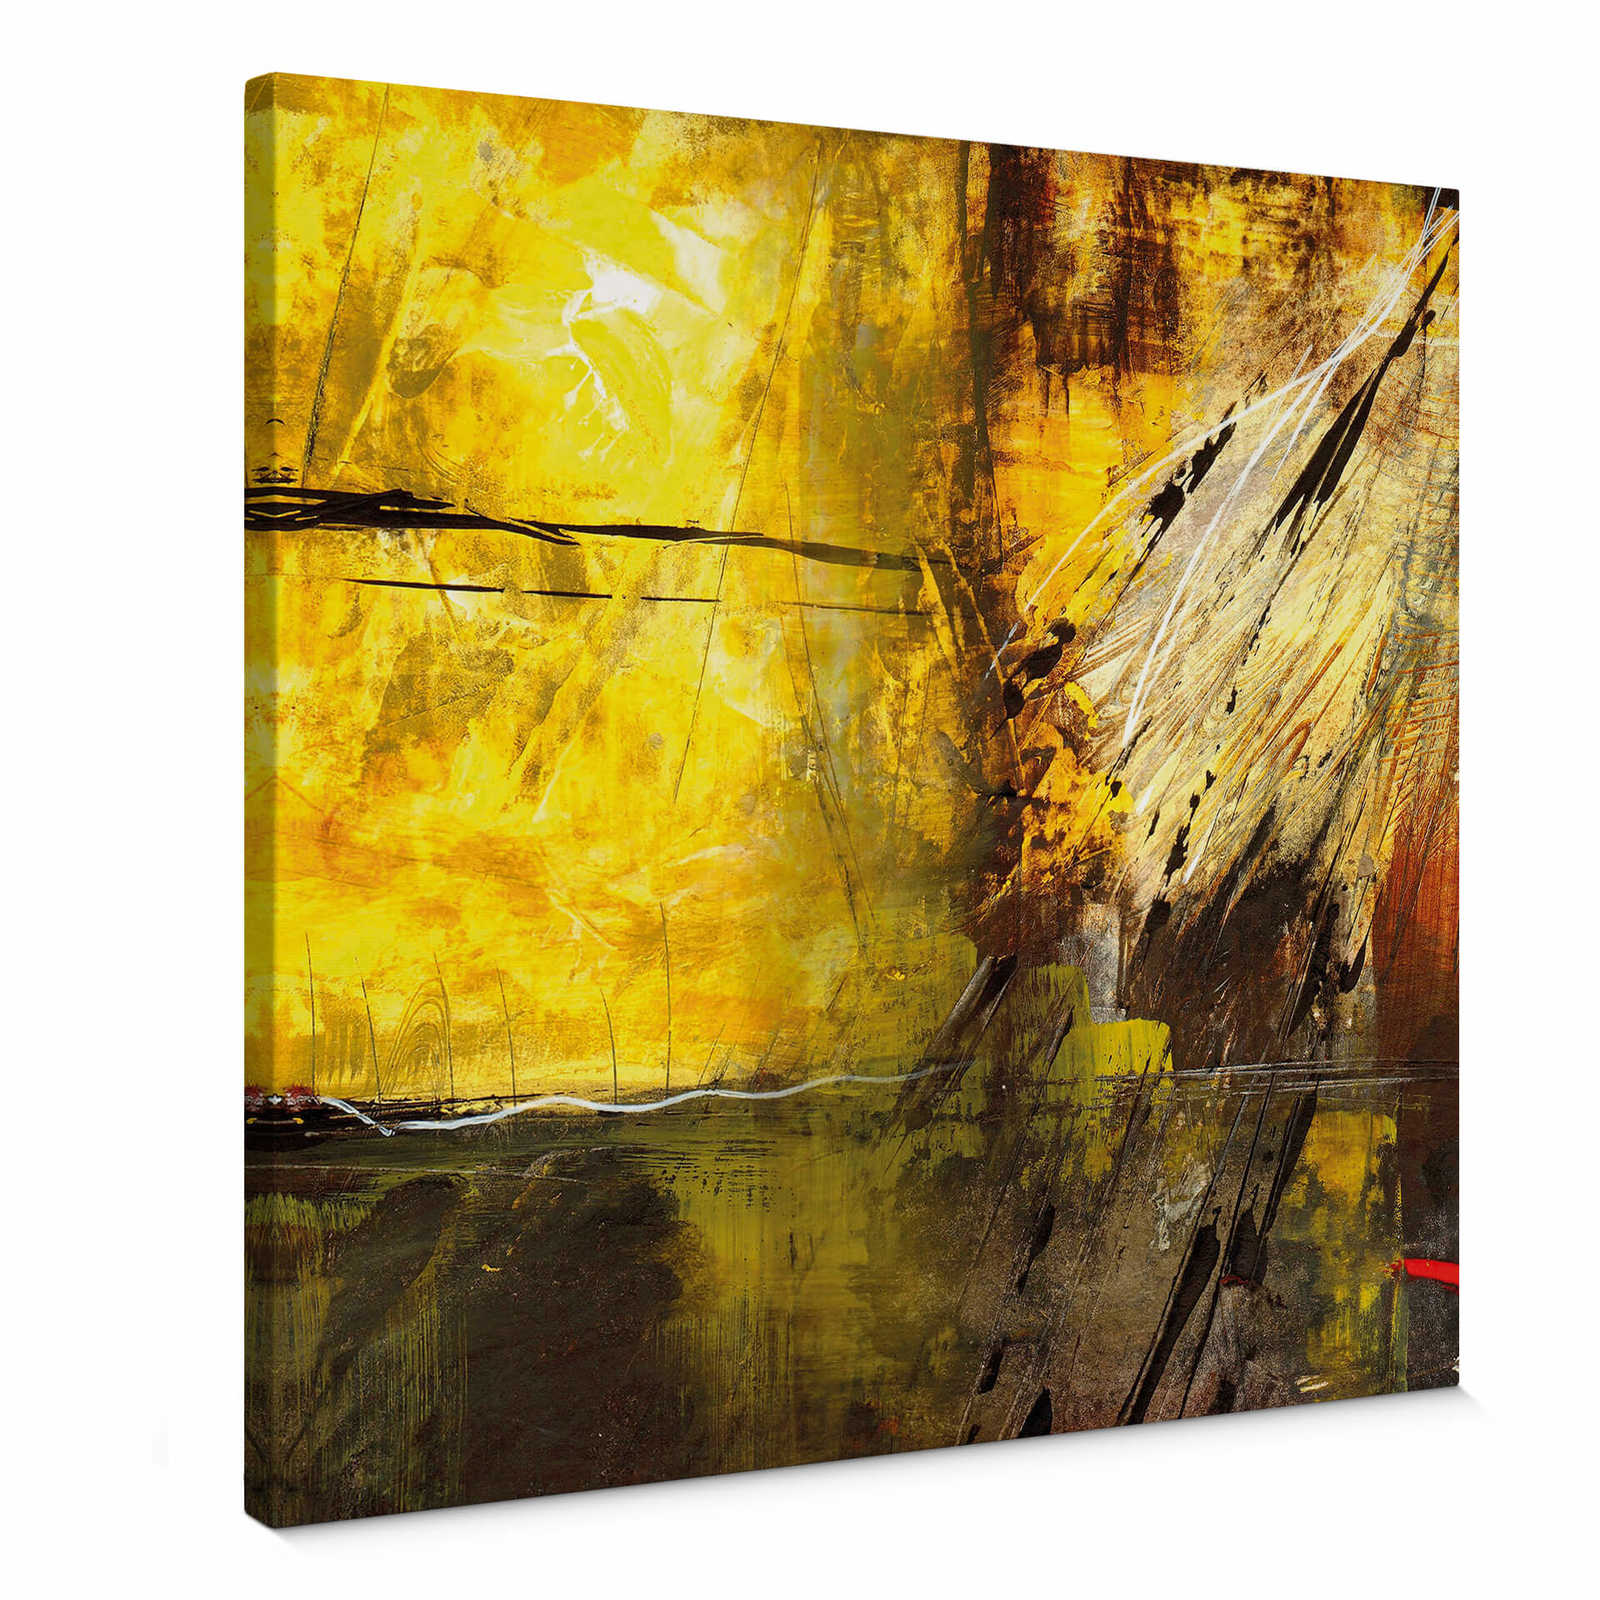 Vierkant Canvas Schilderij Niksic "Stralen van het Leven" - 0.50 m x 0.50 m
